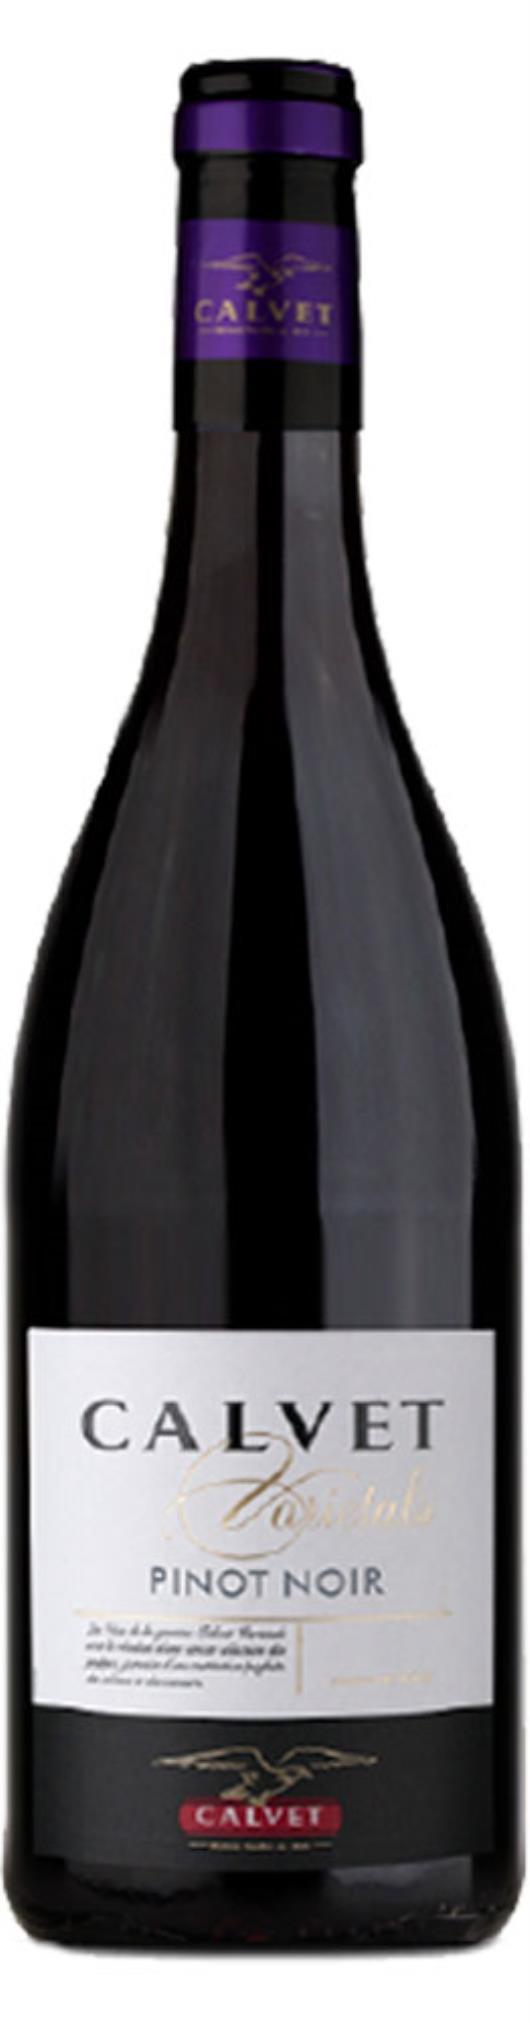 Vinho francês pinot noir Calvet Varietals 750ml - Imagem em destaque